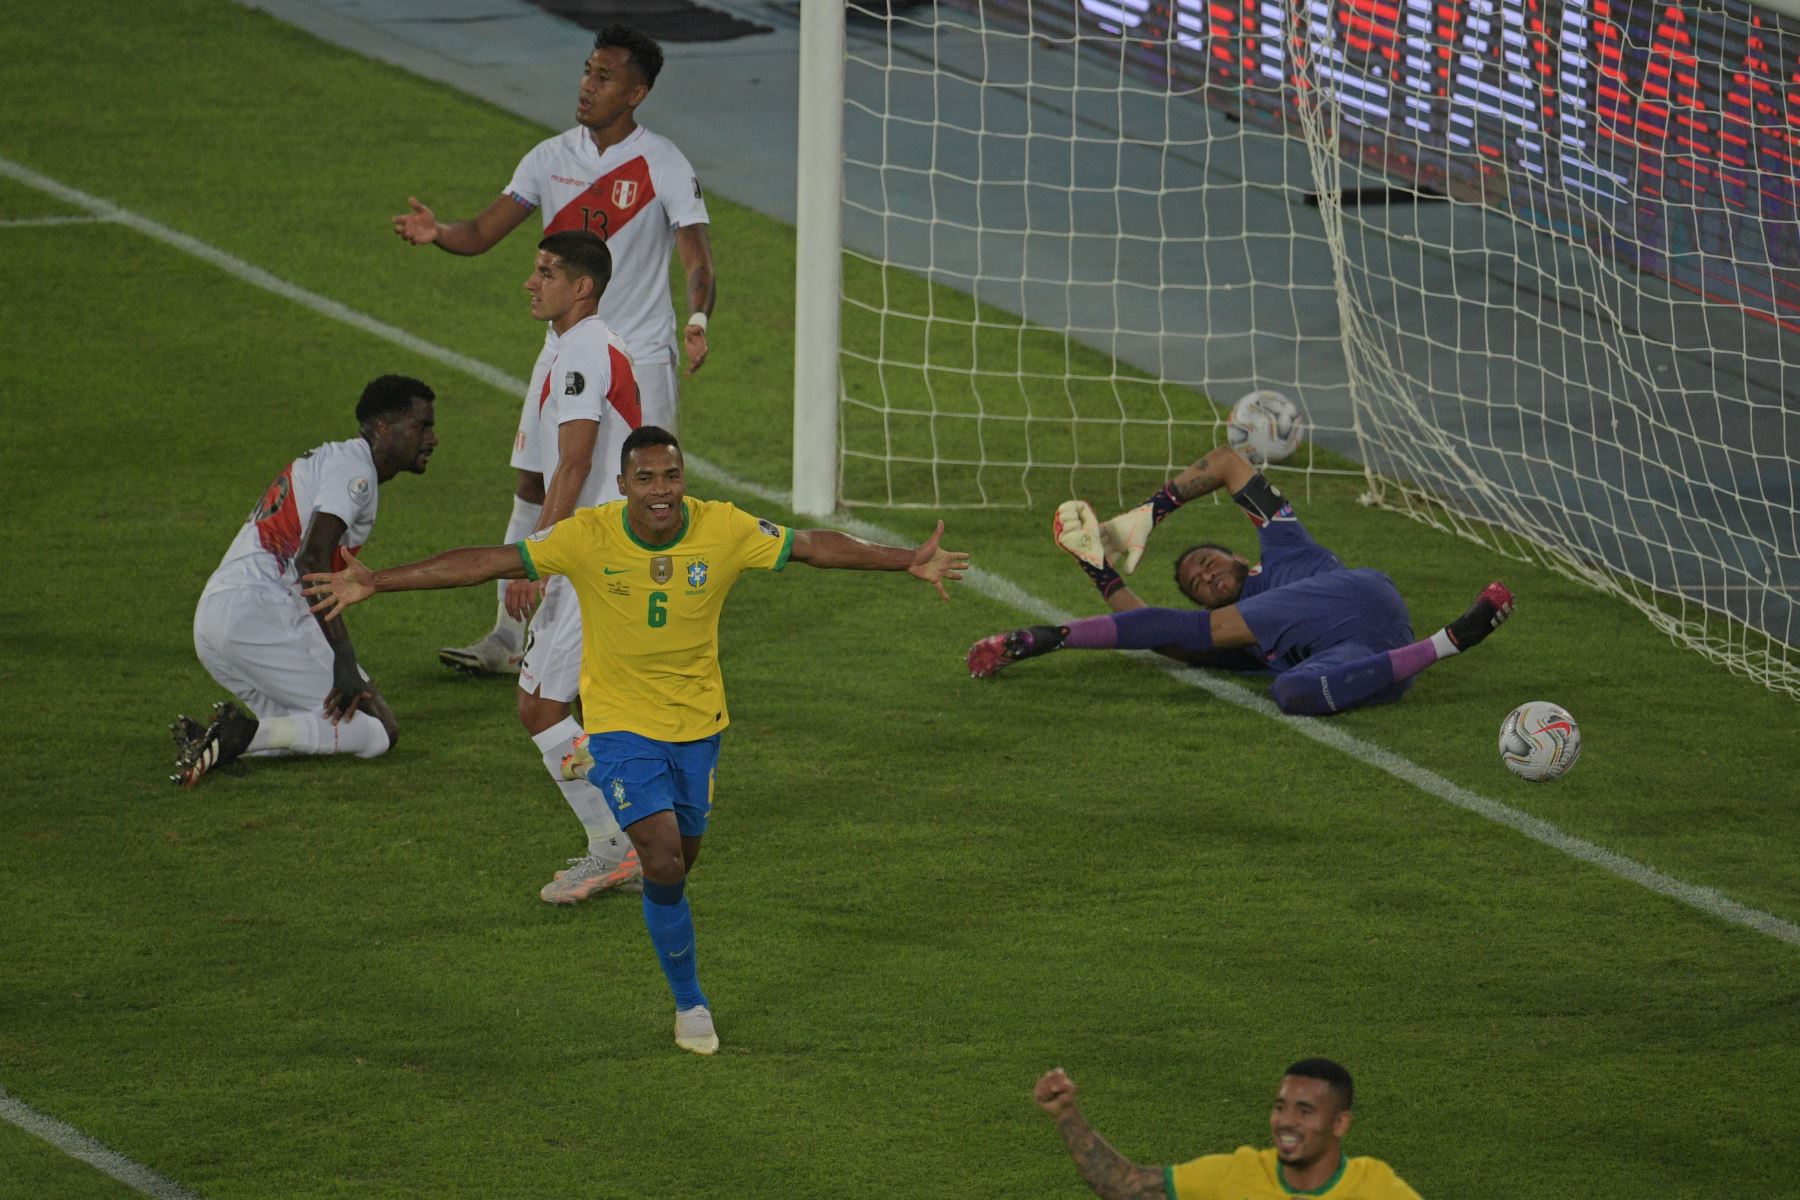 Alex Sandro de Brasil celebra tras anotar contra Perú durante el partido de la fase de grupos del torneo de fútbol Copa América, en el estadio Nilton Santos de Río de Janeiro, Brasil. Foto: AFP.